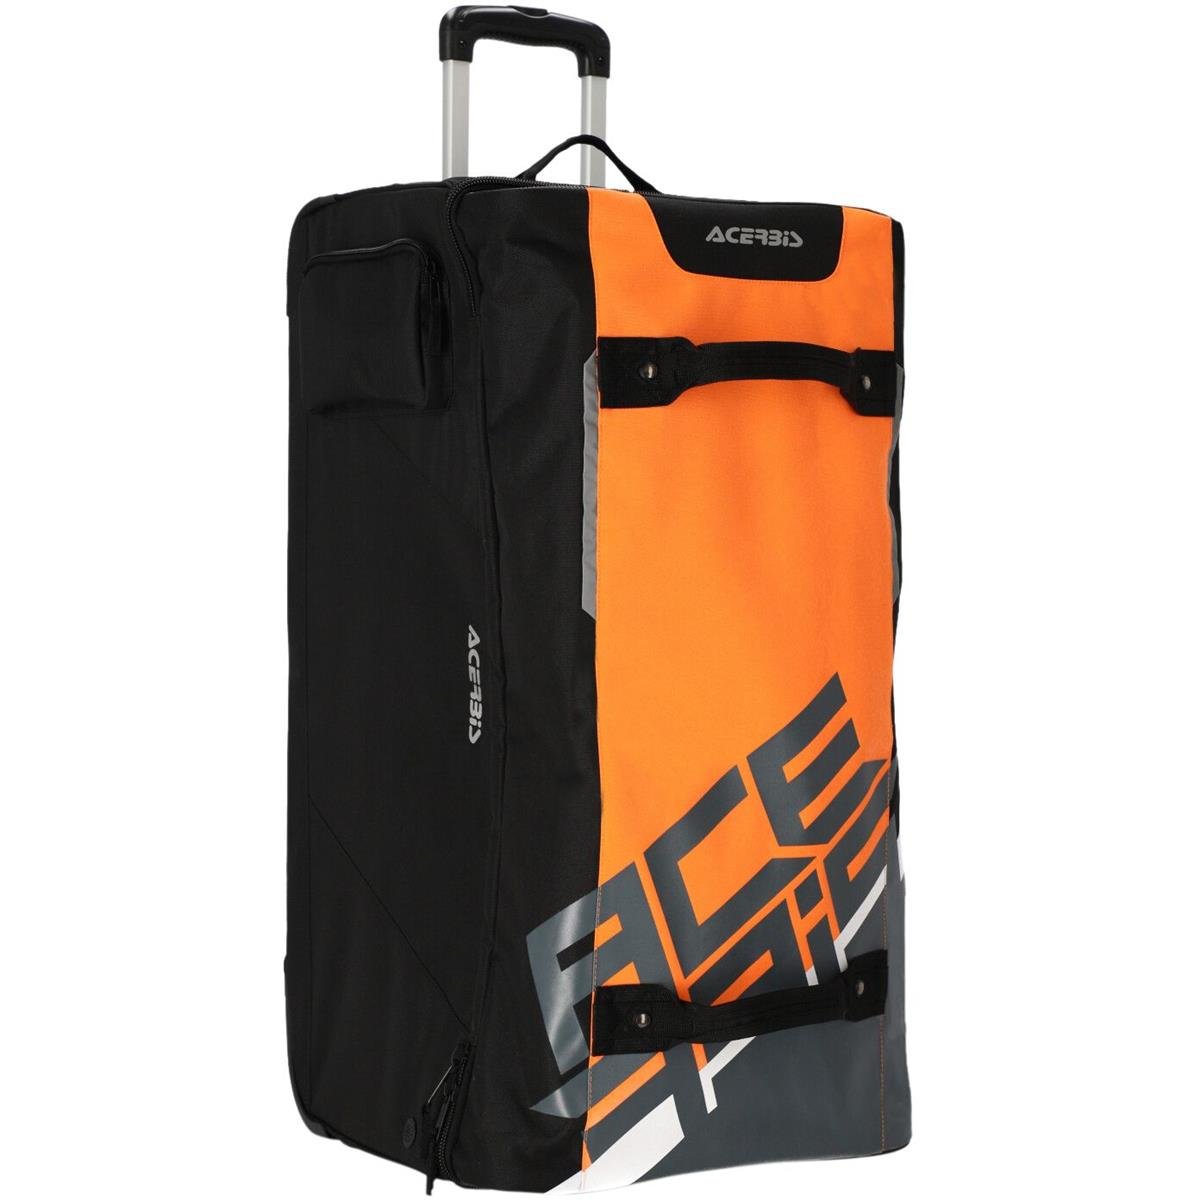 Acerbis Travel Bag X-Voyager 105 Liter - Orange/Gray